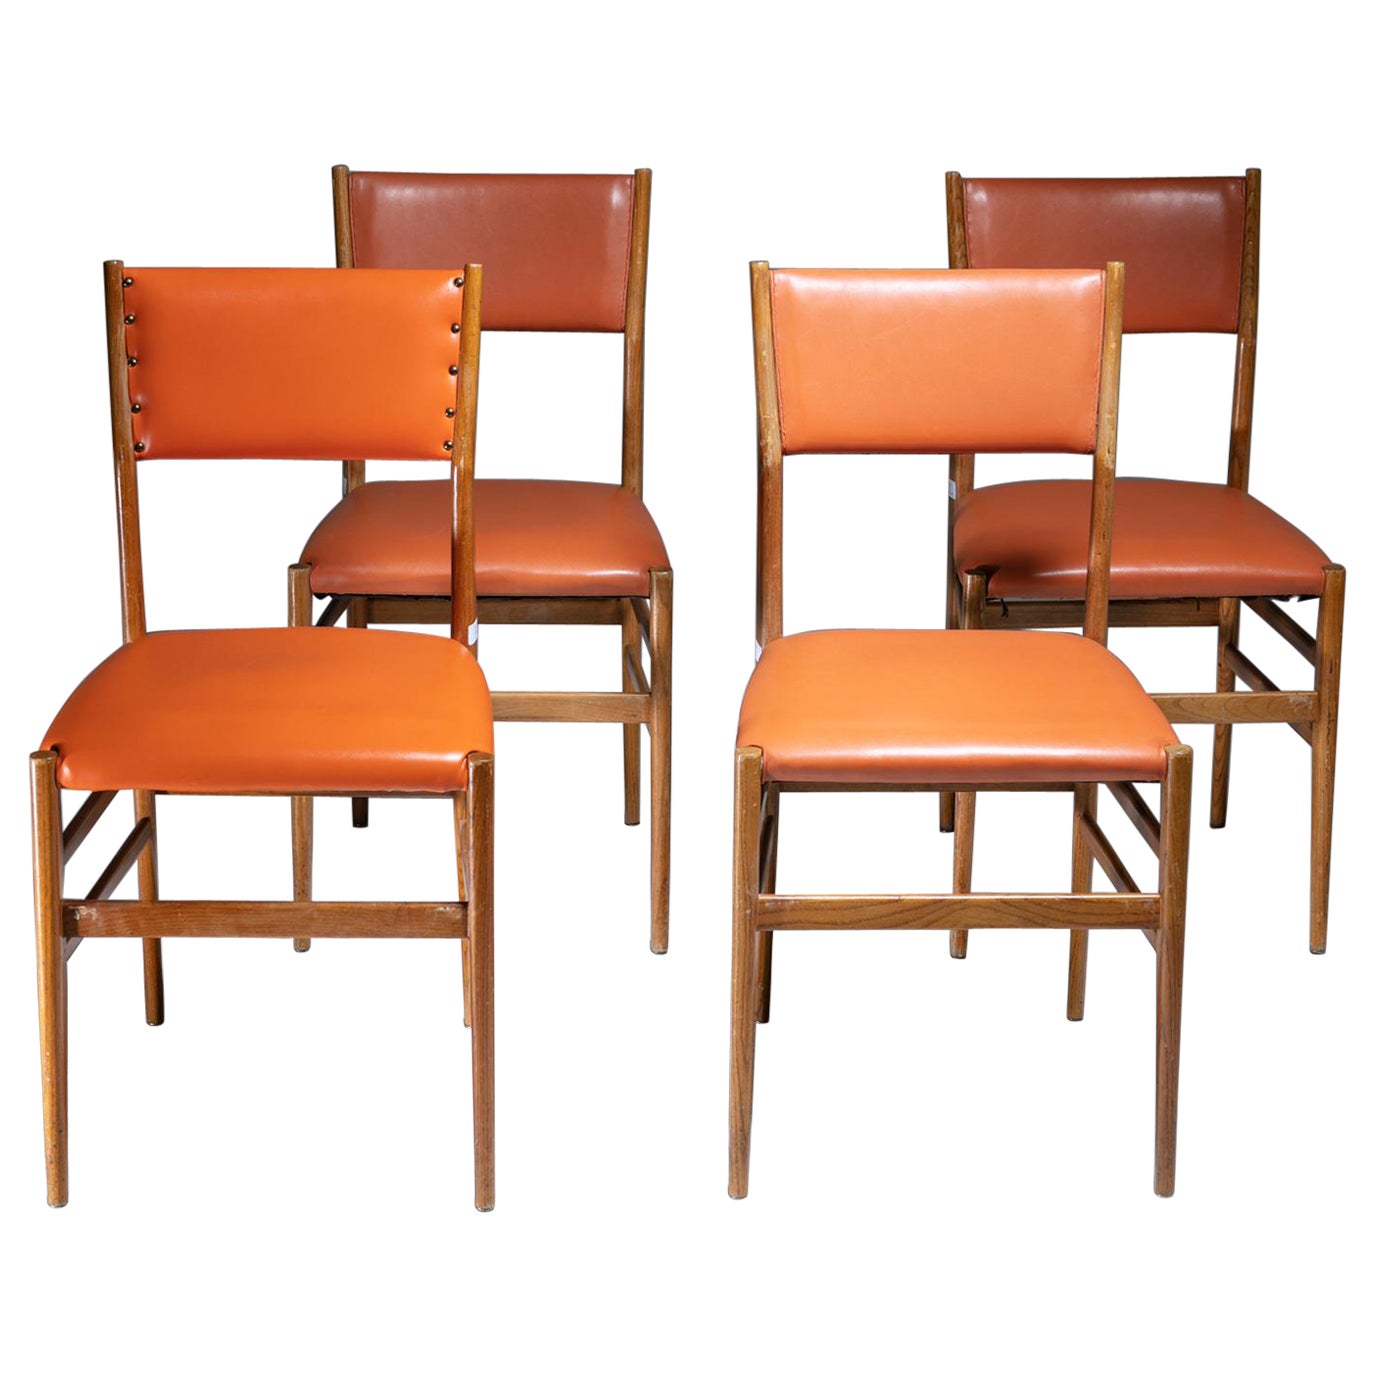 Satz von 4 orangefarbenen Lederstühlen „Leggera“ von Gio Ponti für Cassina, Italien, 1950er Jahre